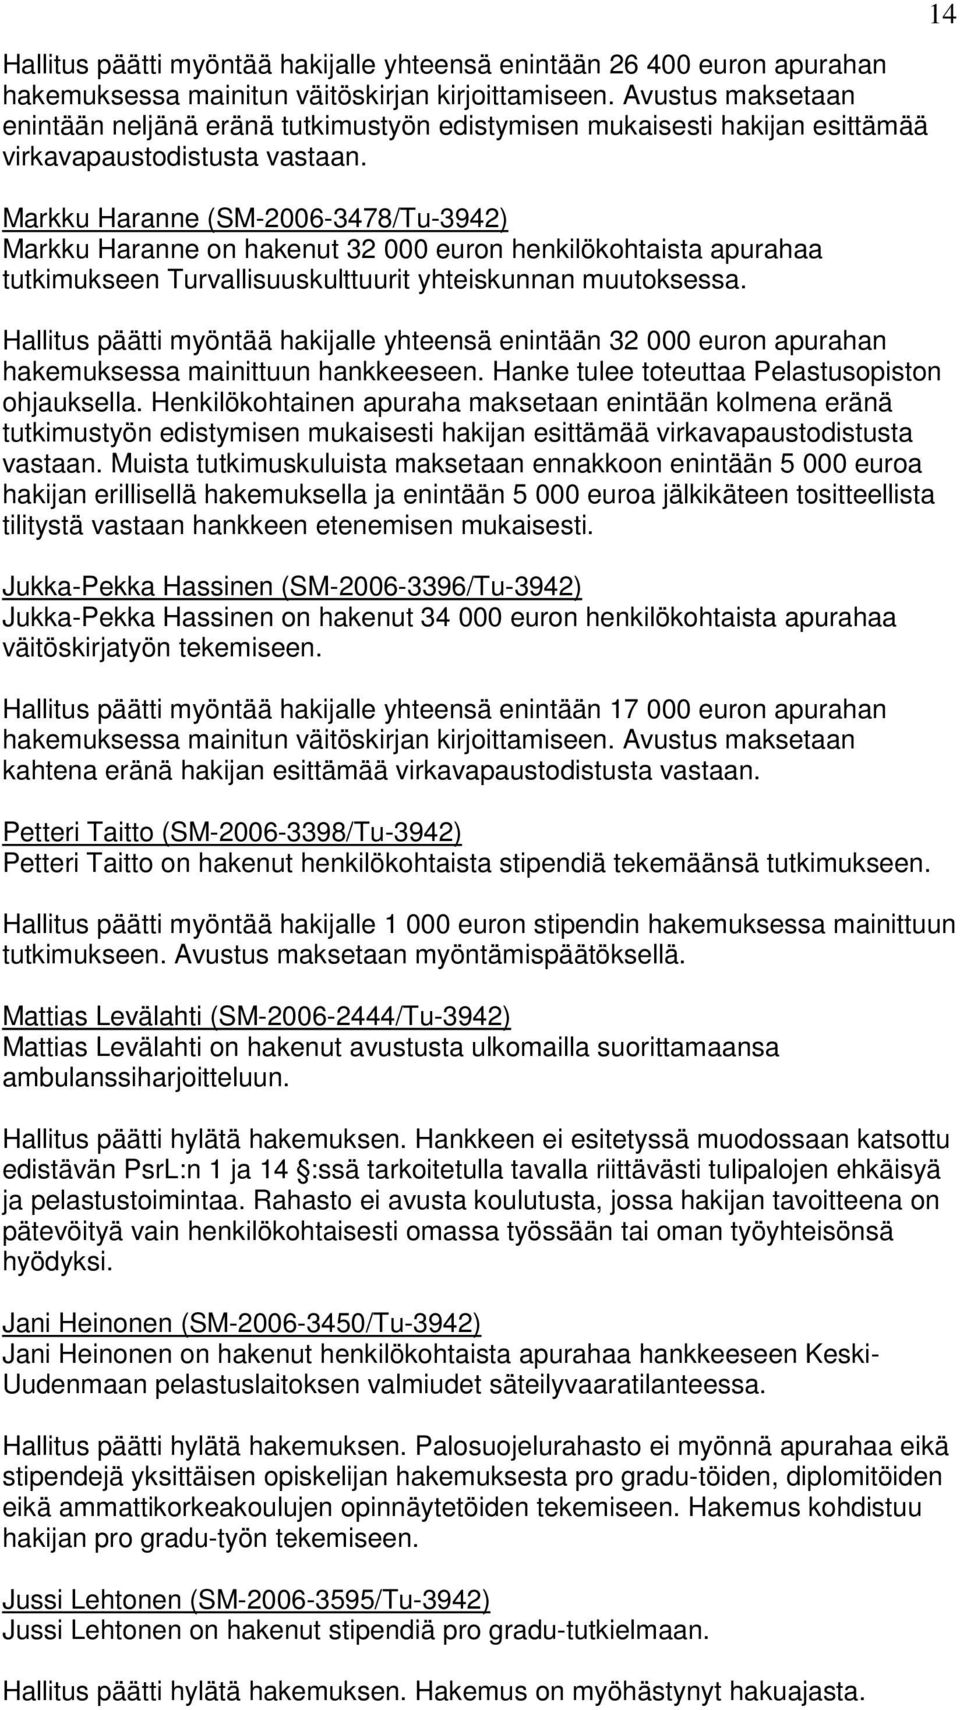 Markku Haranne (SM-2006-3478/Tu-3942) Markku Haranne on hakenut 32 000 euron henkilökohtaista apurahaa tutkimukseen Turvallisuuskulttuurit yhteiskunnan muutoksessa.